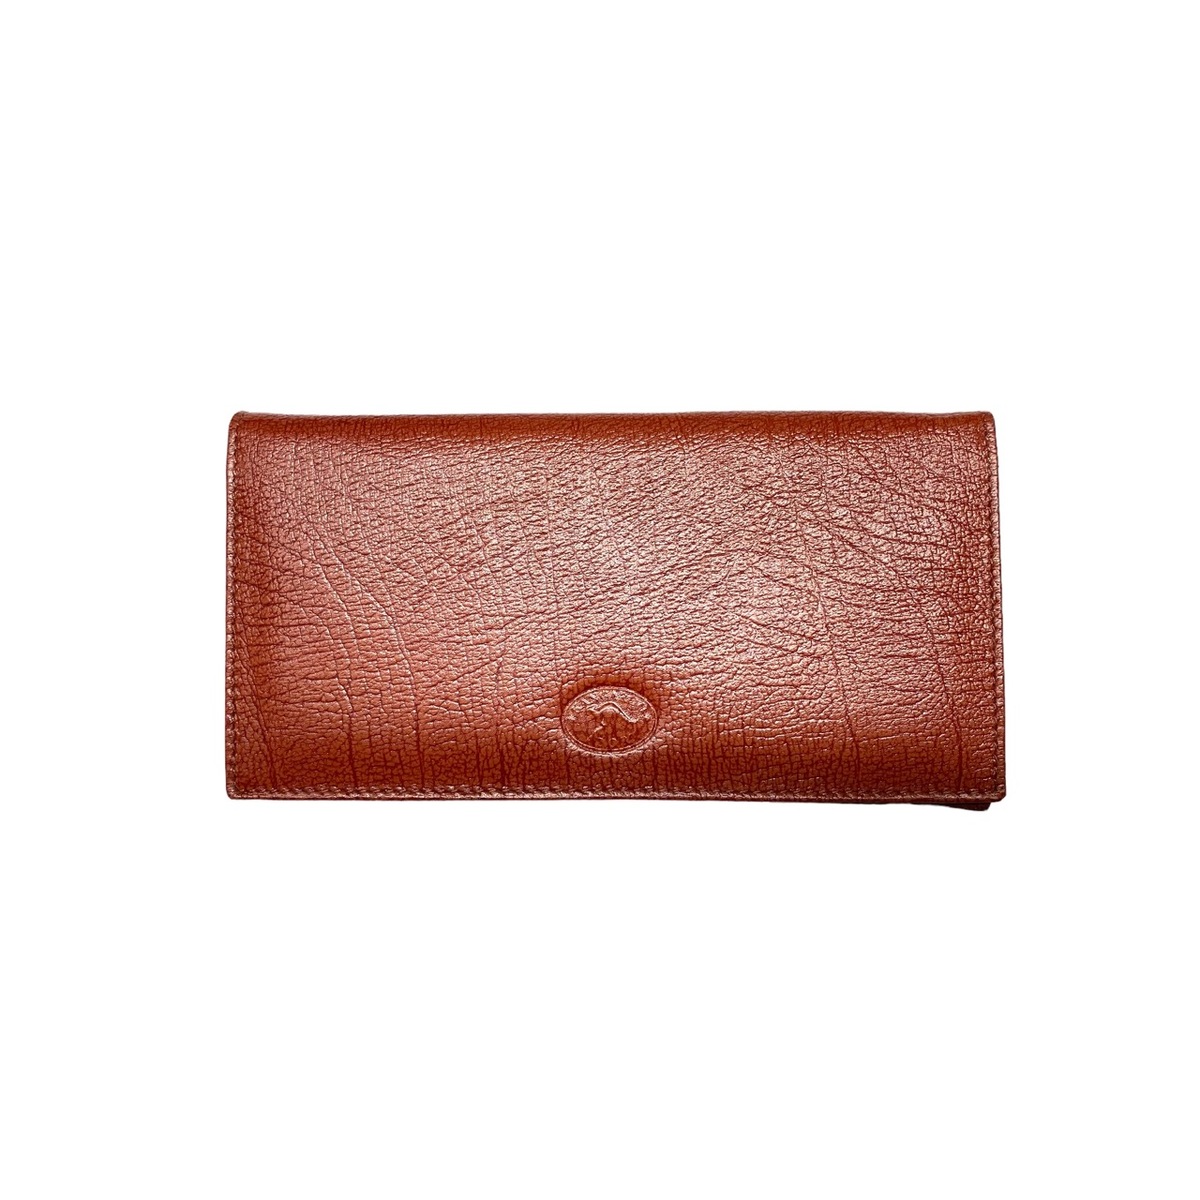 AK2098 Ladies wallet Antique Tan Kangaroo leather